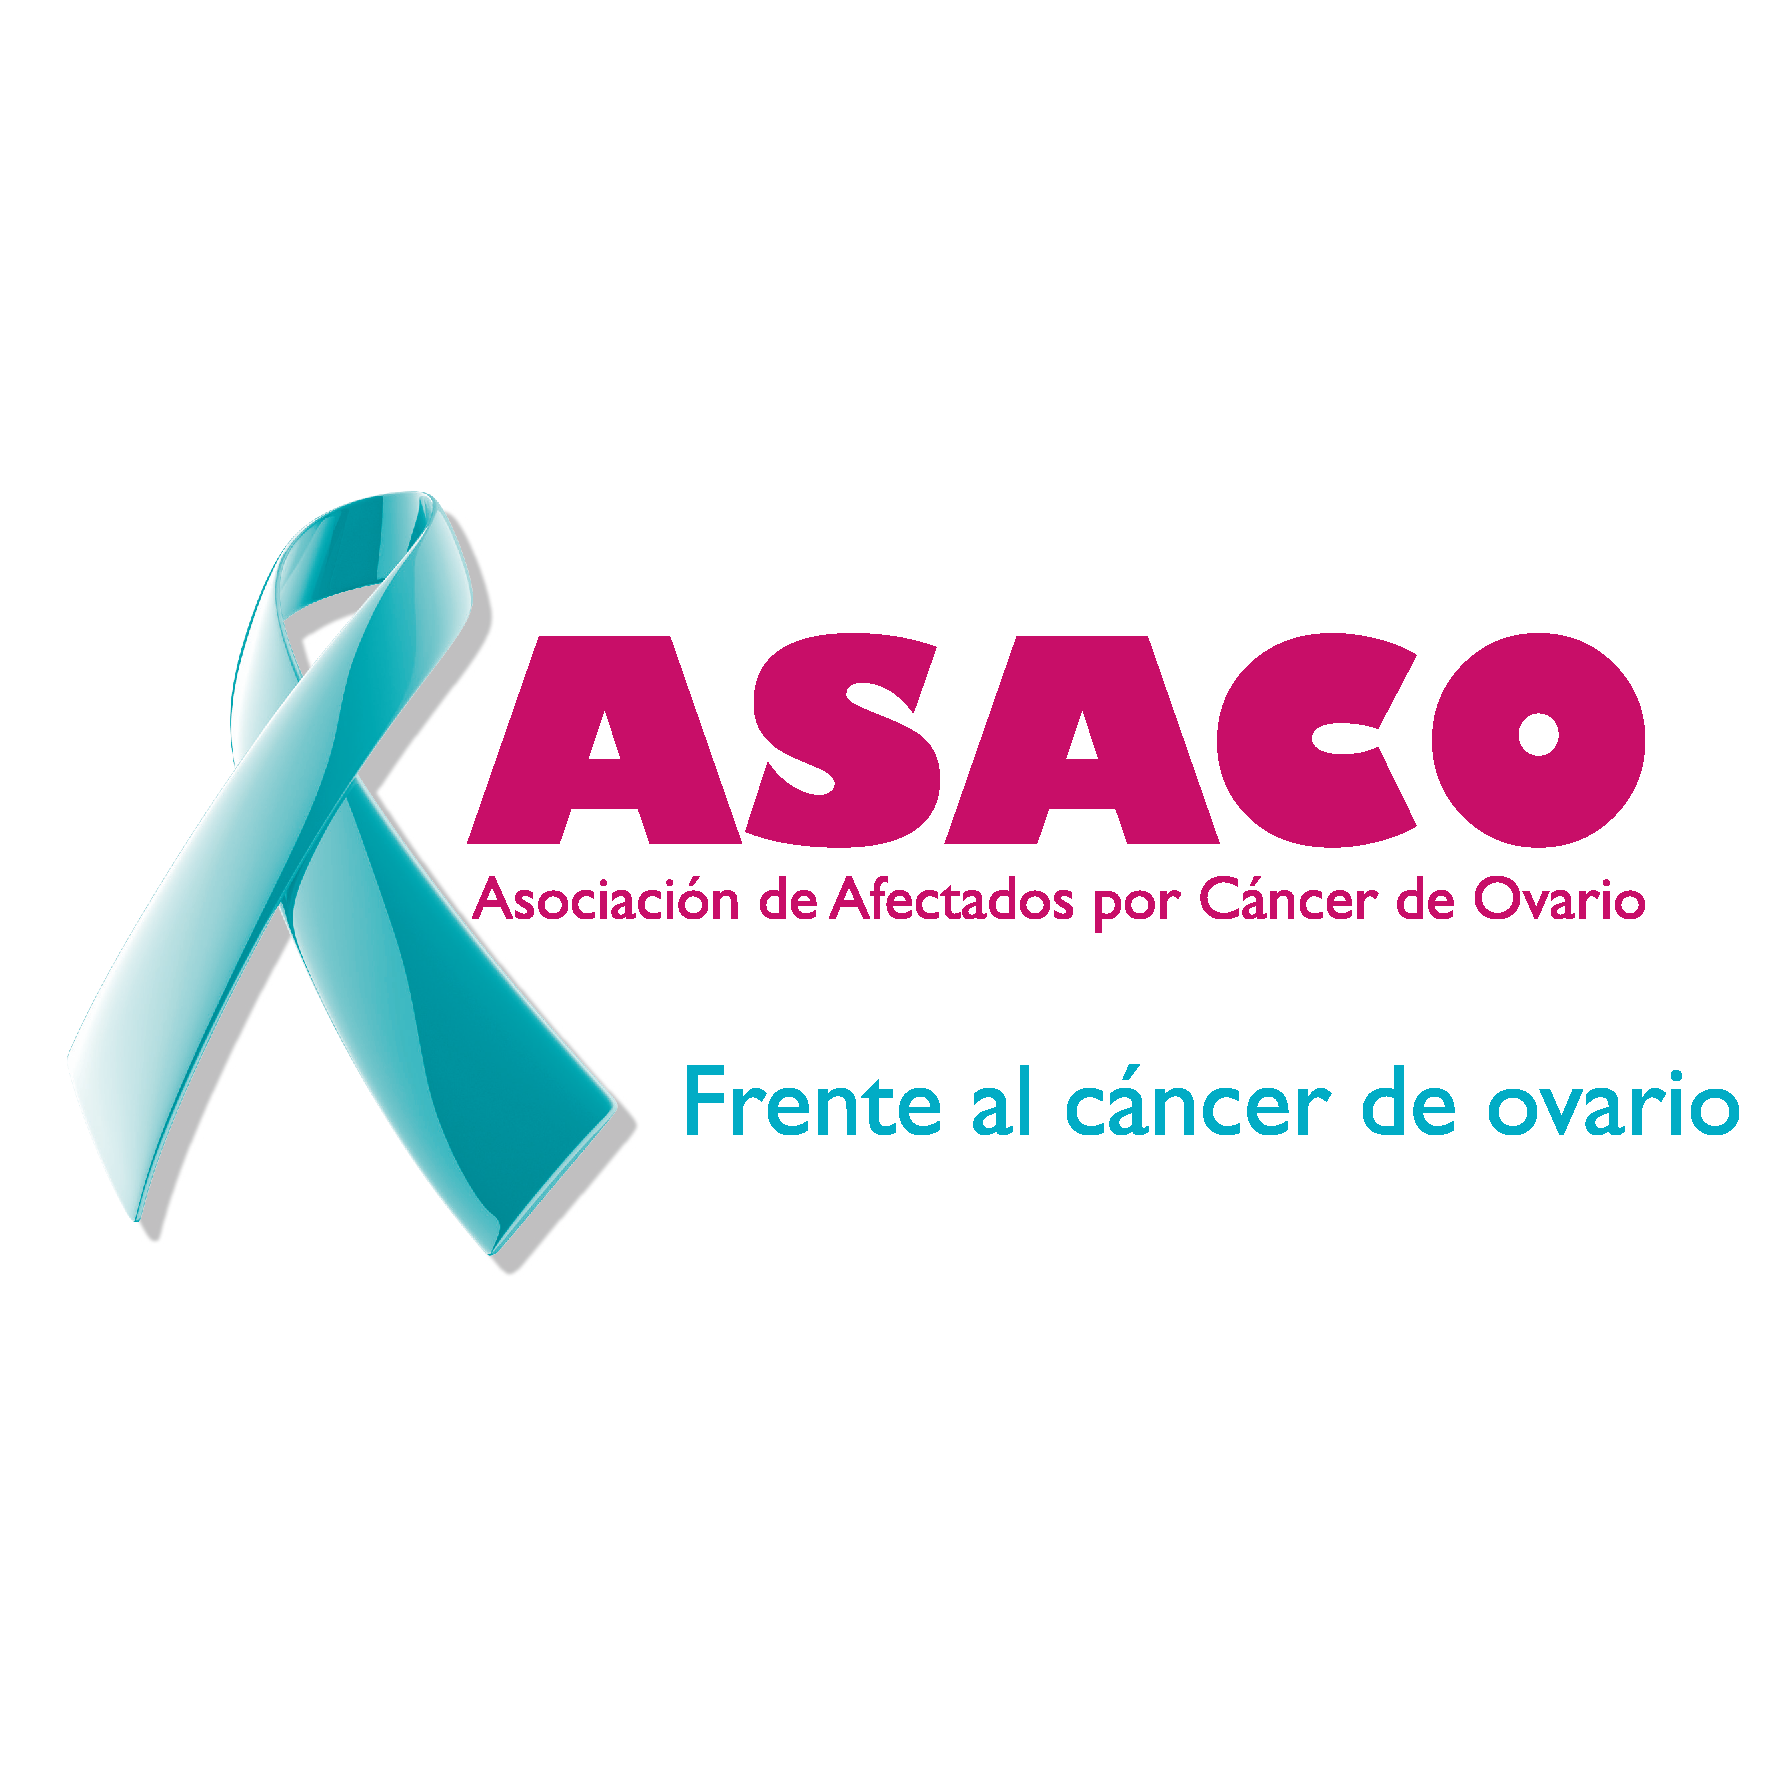 ASACO - Asociación de Afectados por Cáncer de Ovario